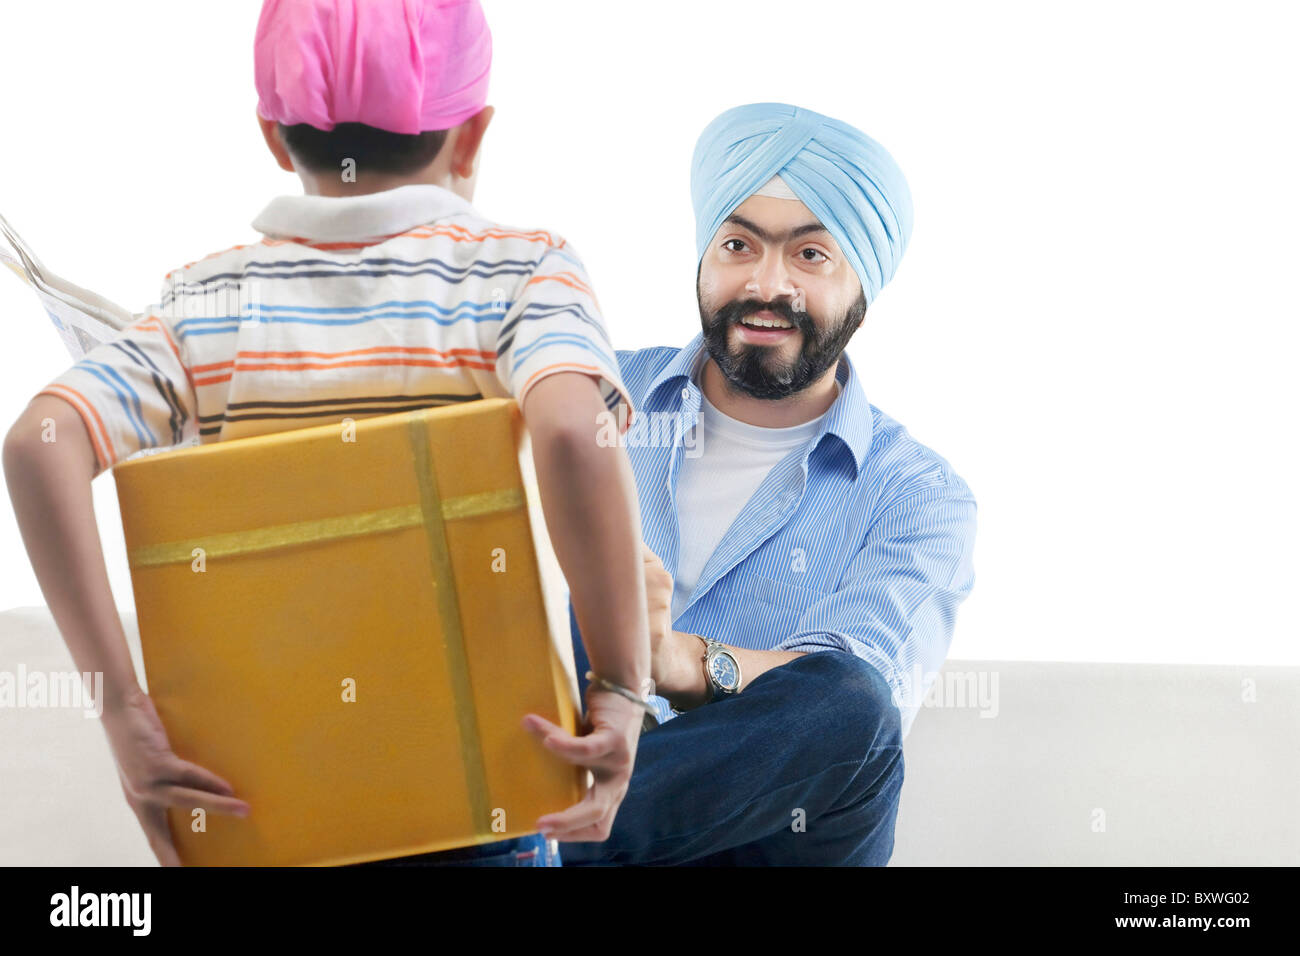 Garçon Sikh de cacher un cadeau de son père Banque D'Images